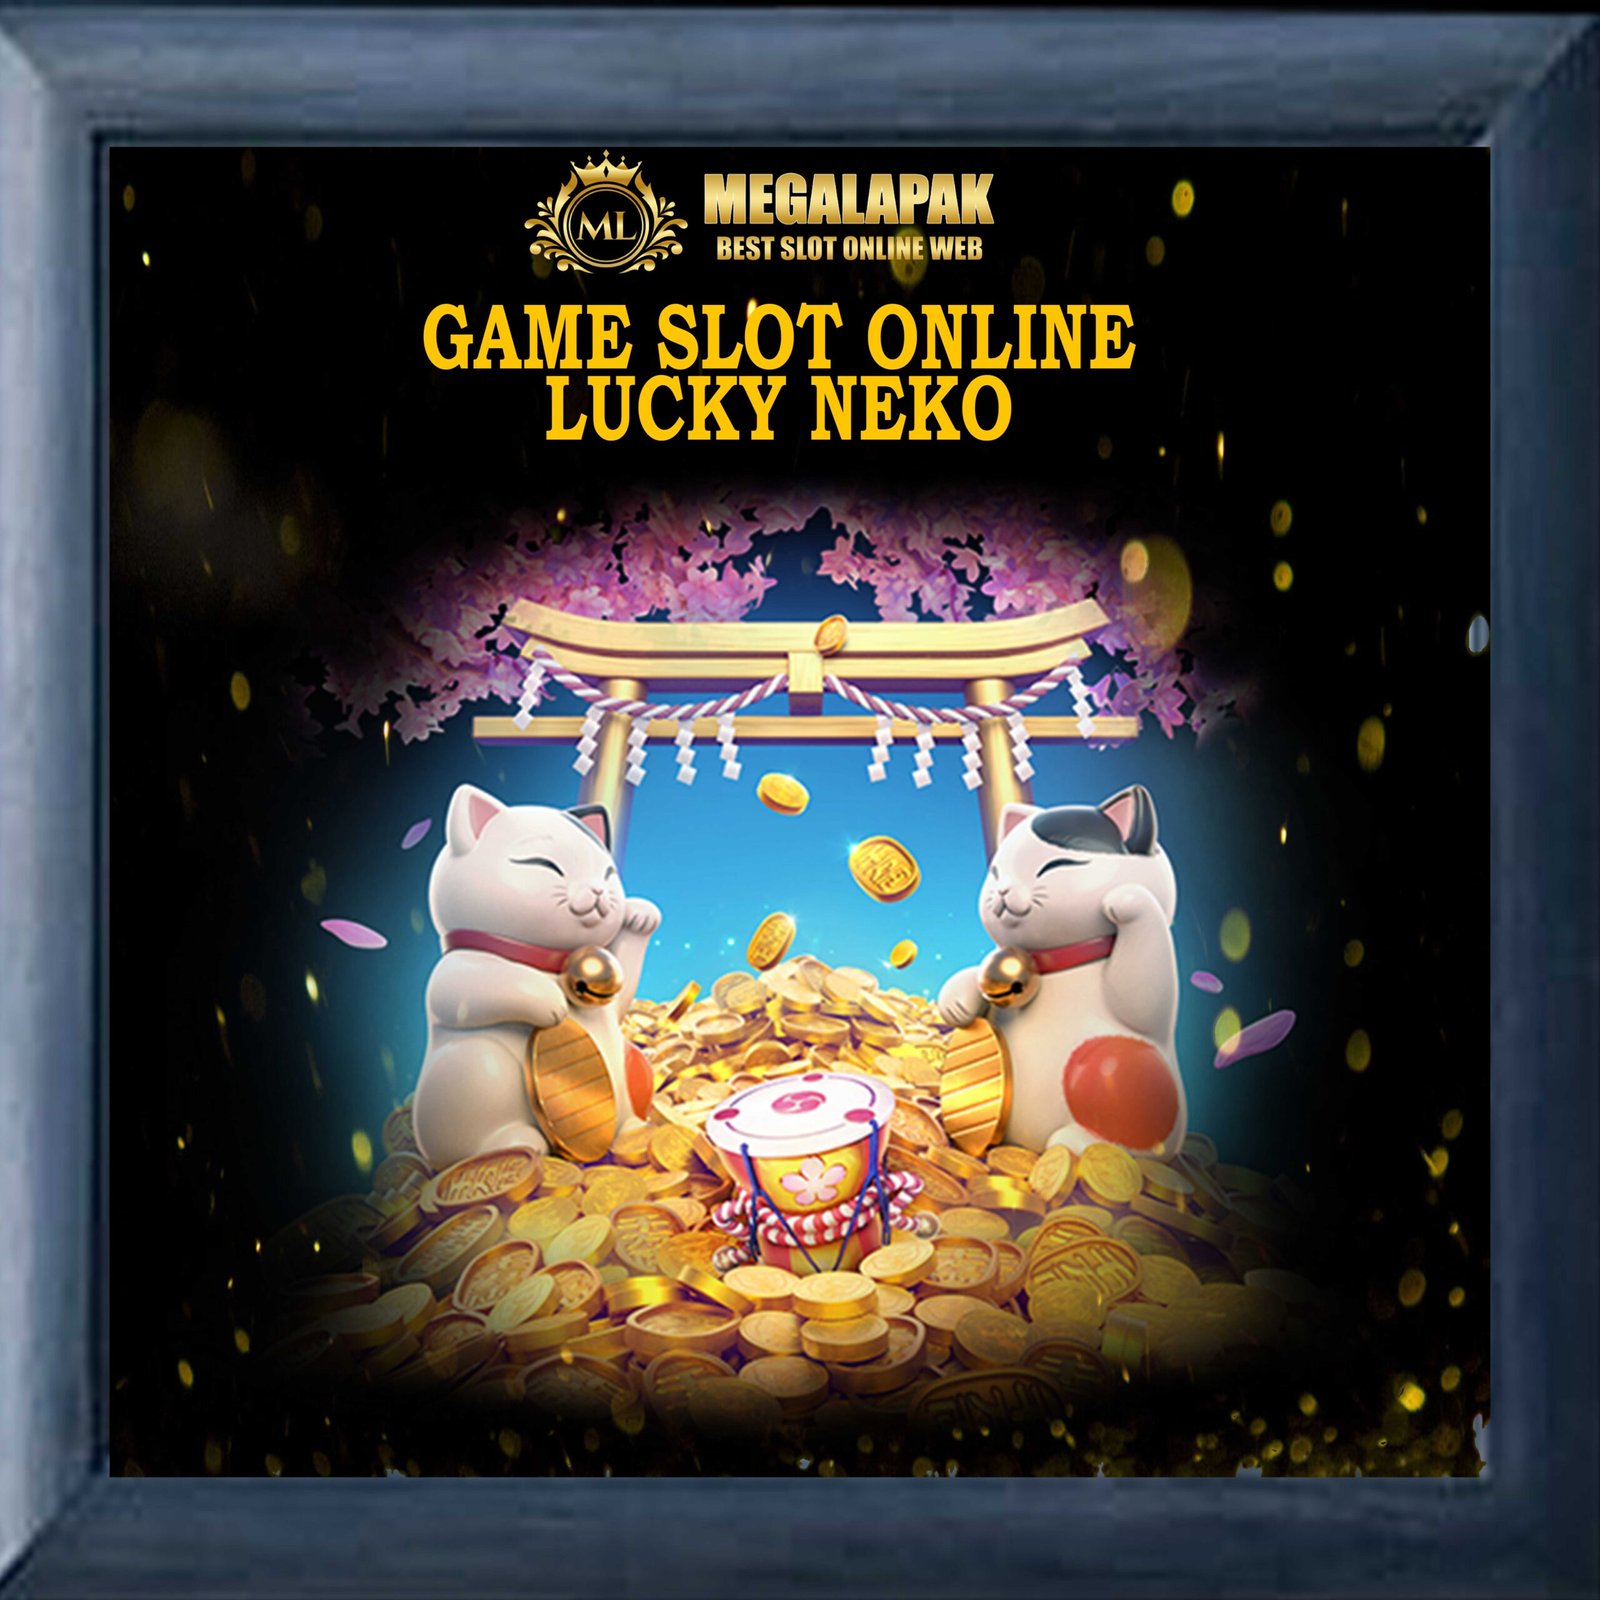 Slot Online Lucky Neko Megalapak